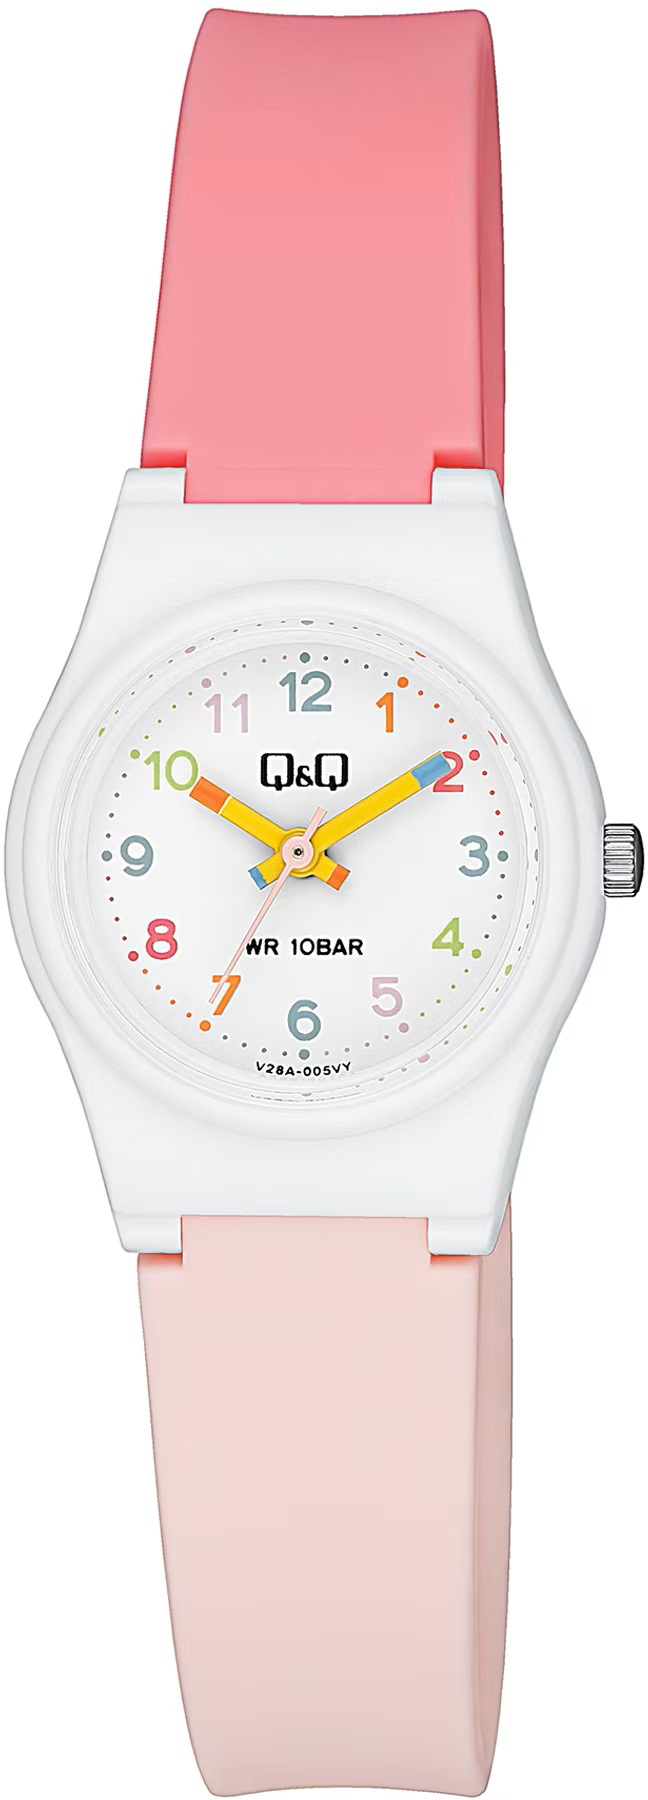 Q&Q Dětské hodinky V28A-005VY